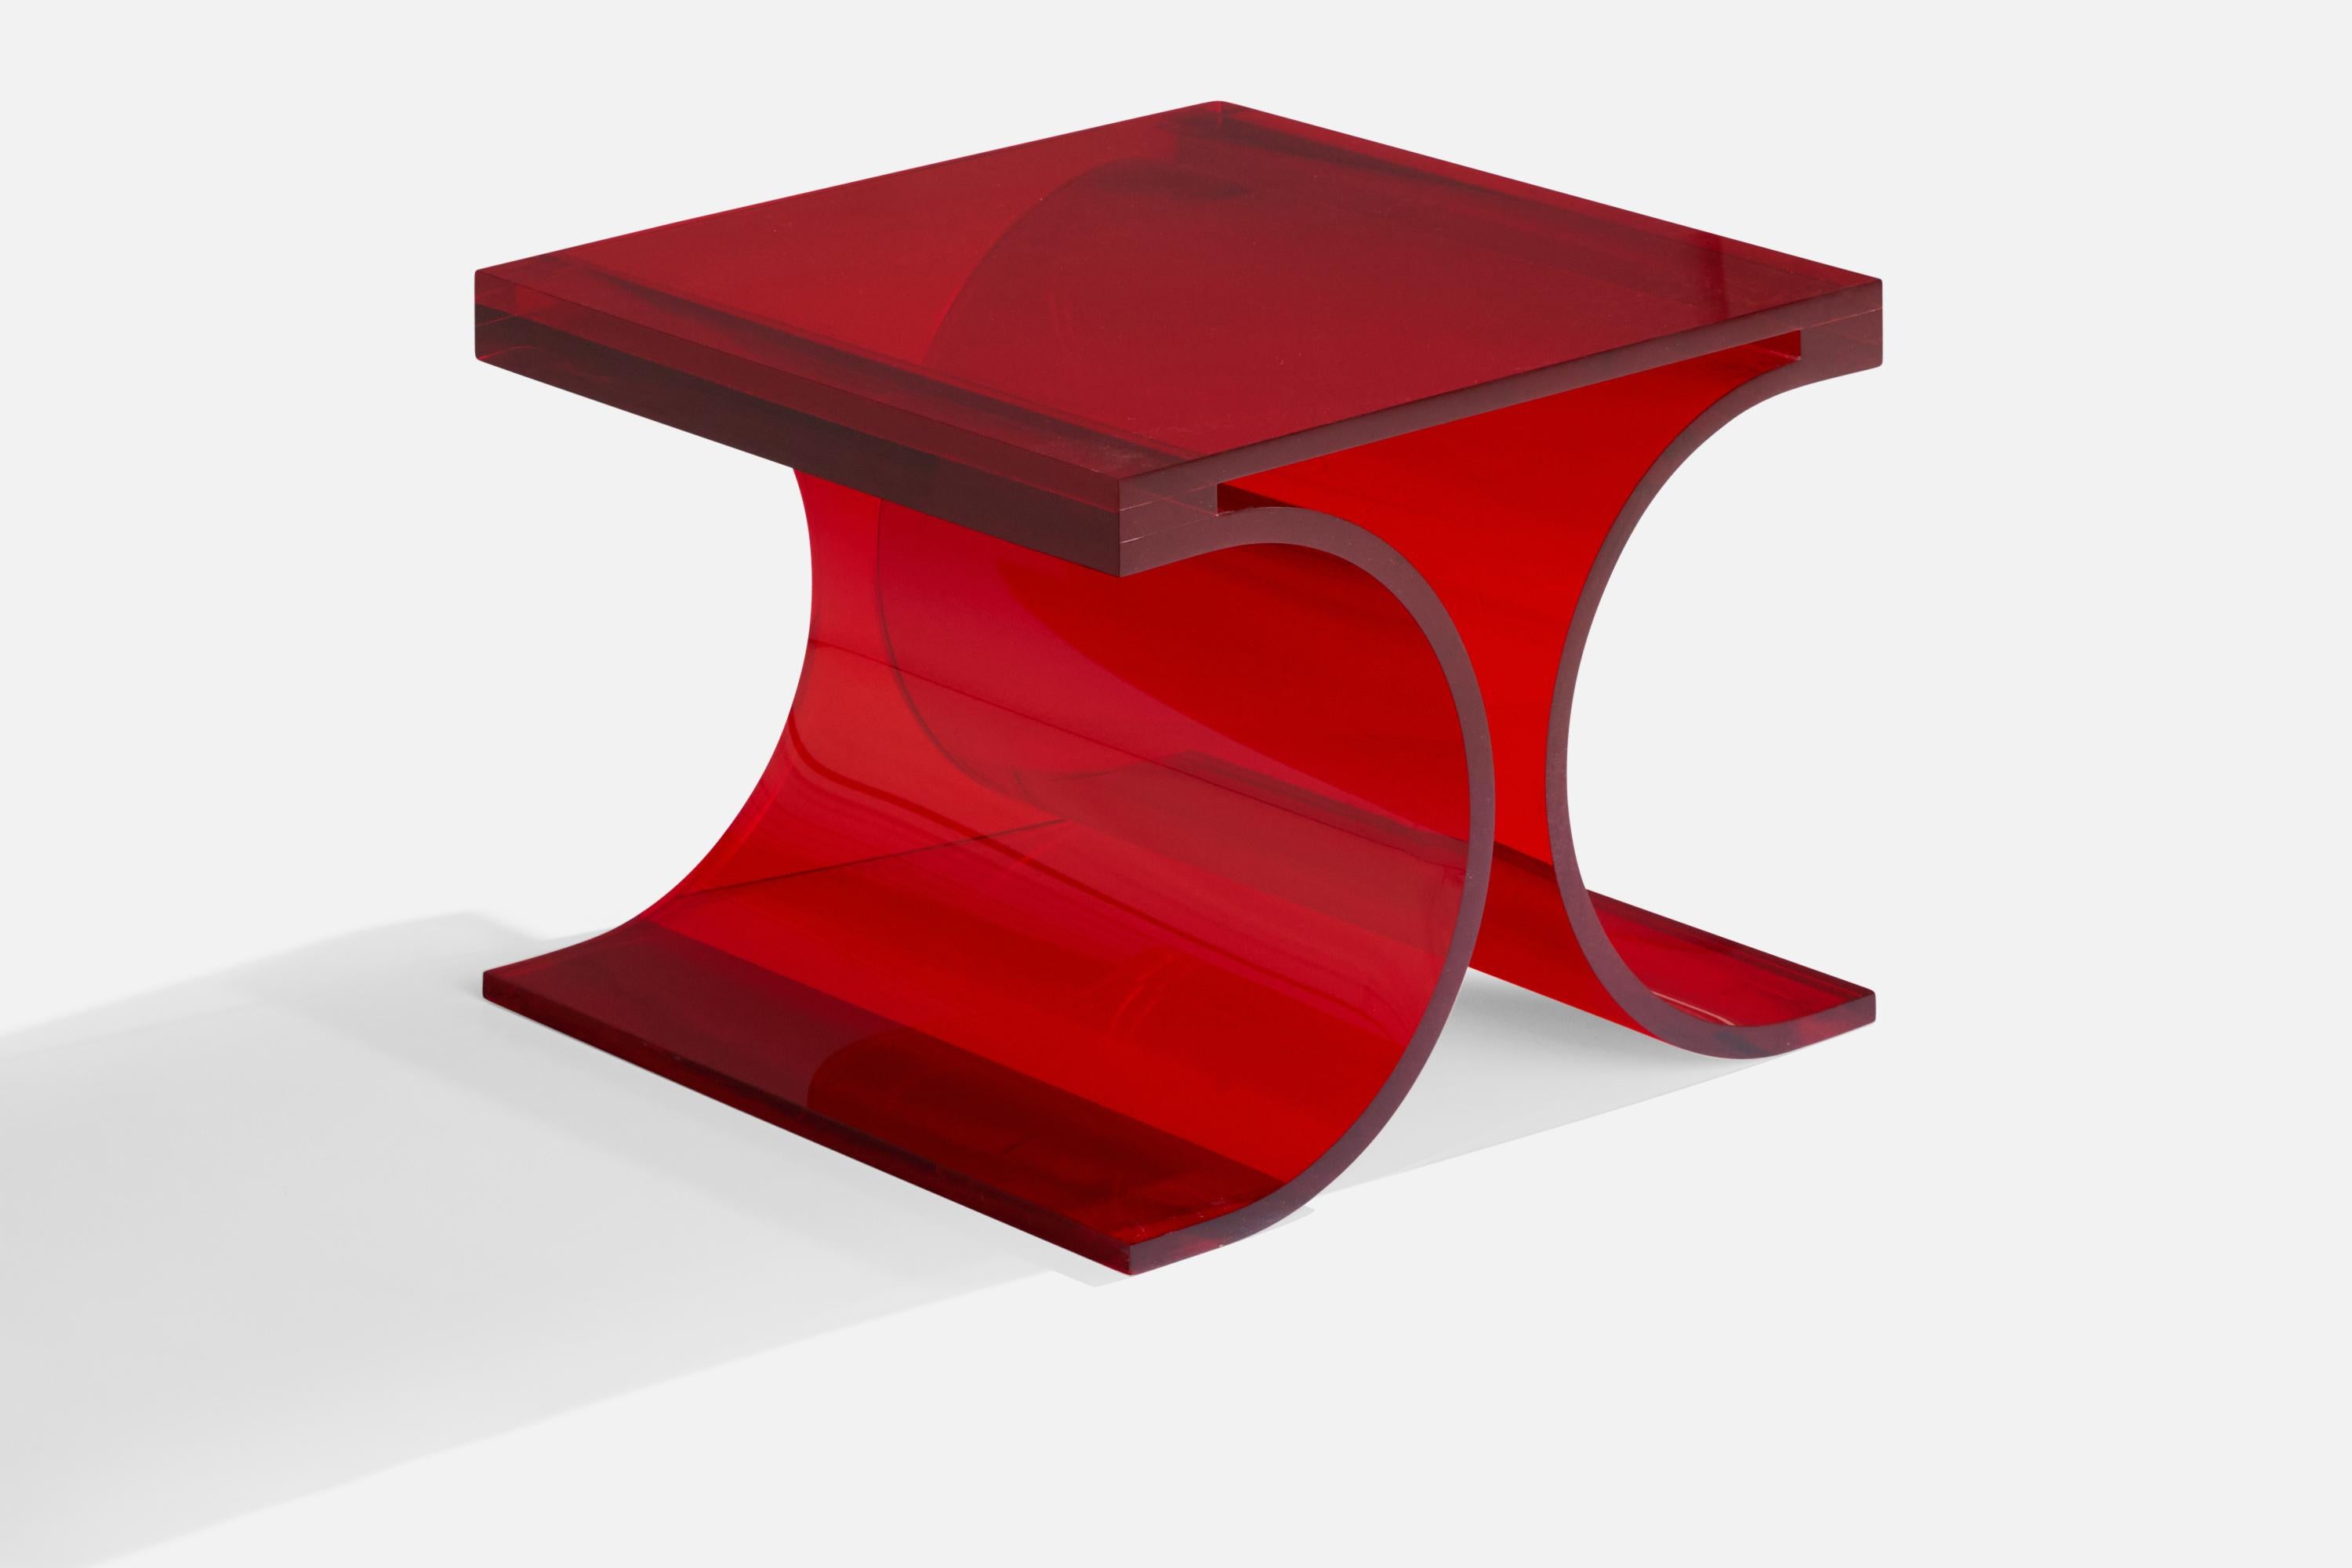 Prototyp eines roten Altuglas-Beistelltisches, entworfen und hergestellt von Michel Boyer & Jean-Pierrre Laporte, Frankreich, 2009.

Produziert für eine Ausstellung bei Silvera im Jahr 2009.
